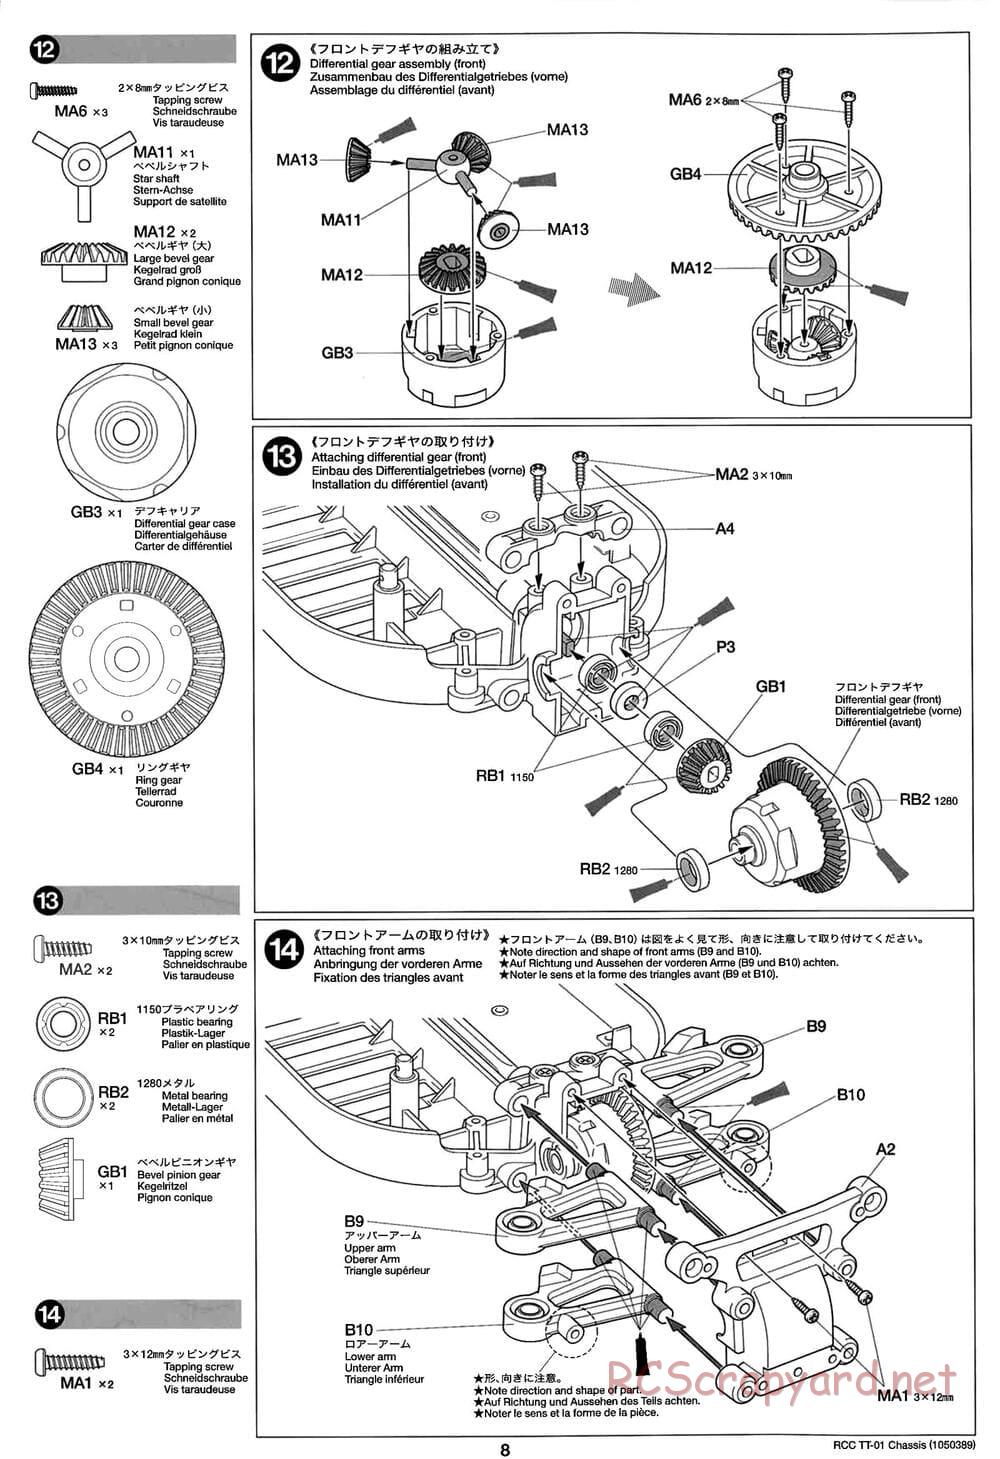 Tamiya - TT-01 Chassis - Manual - Page 8